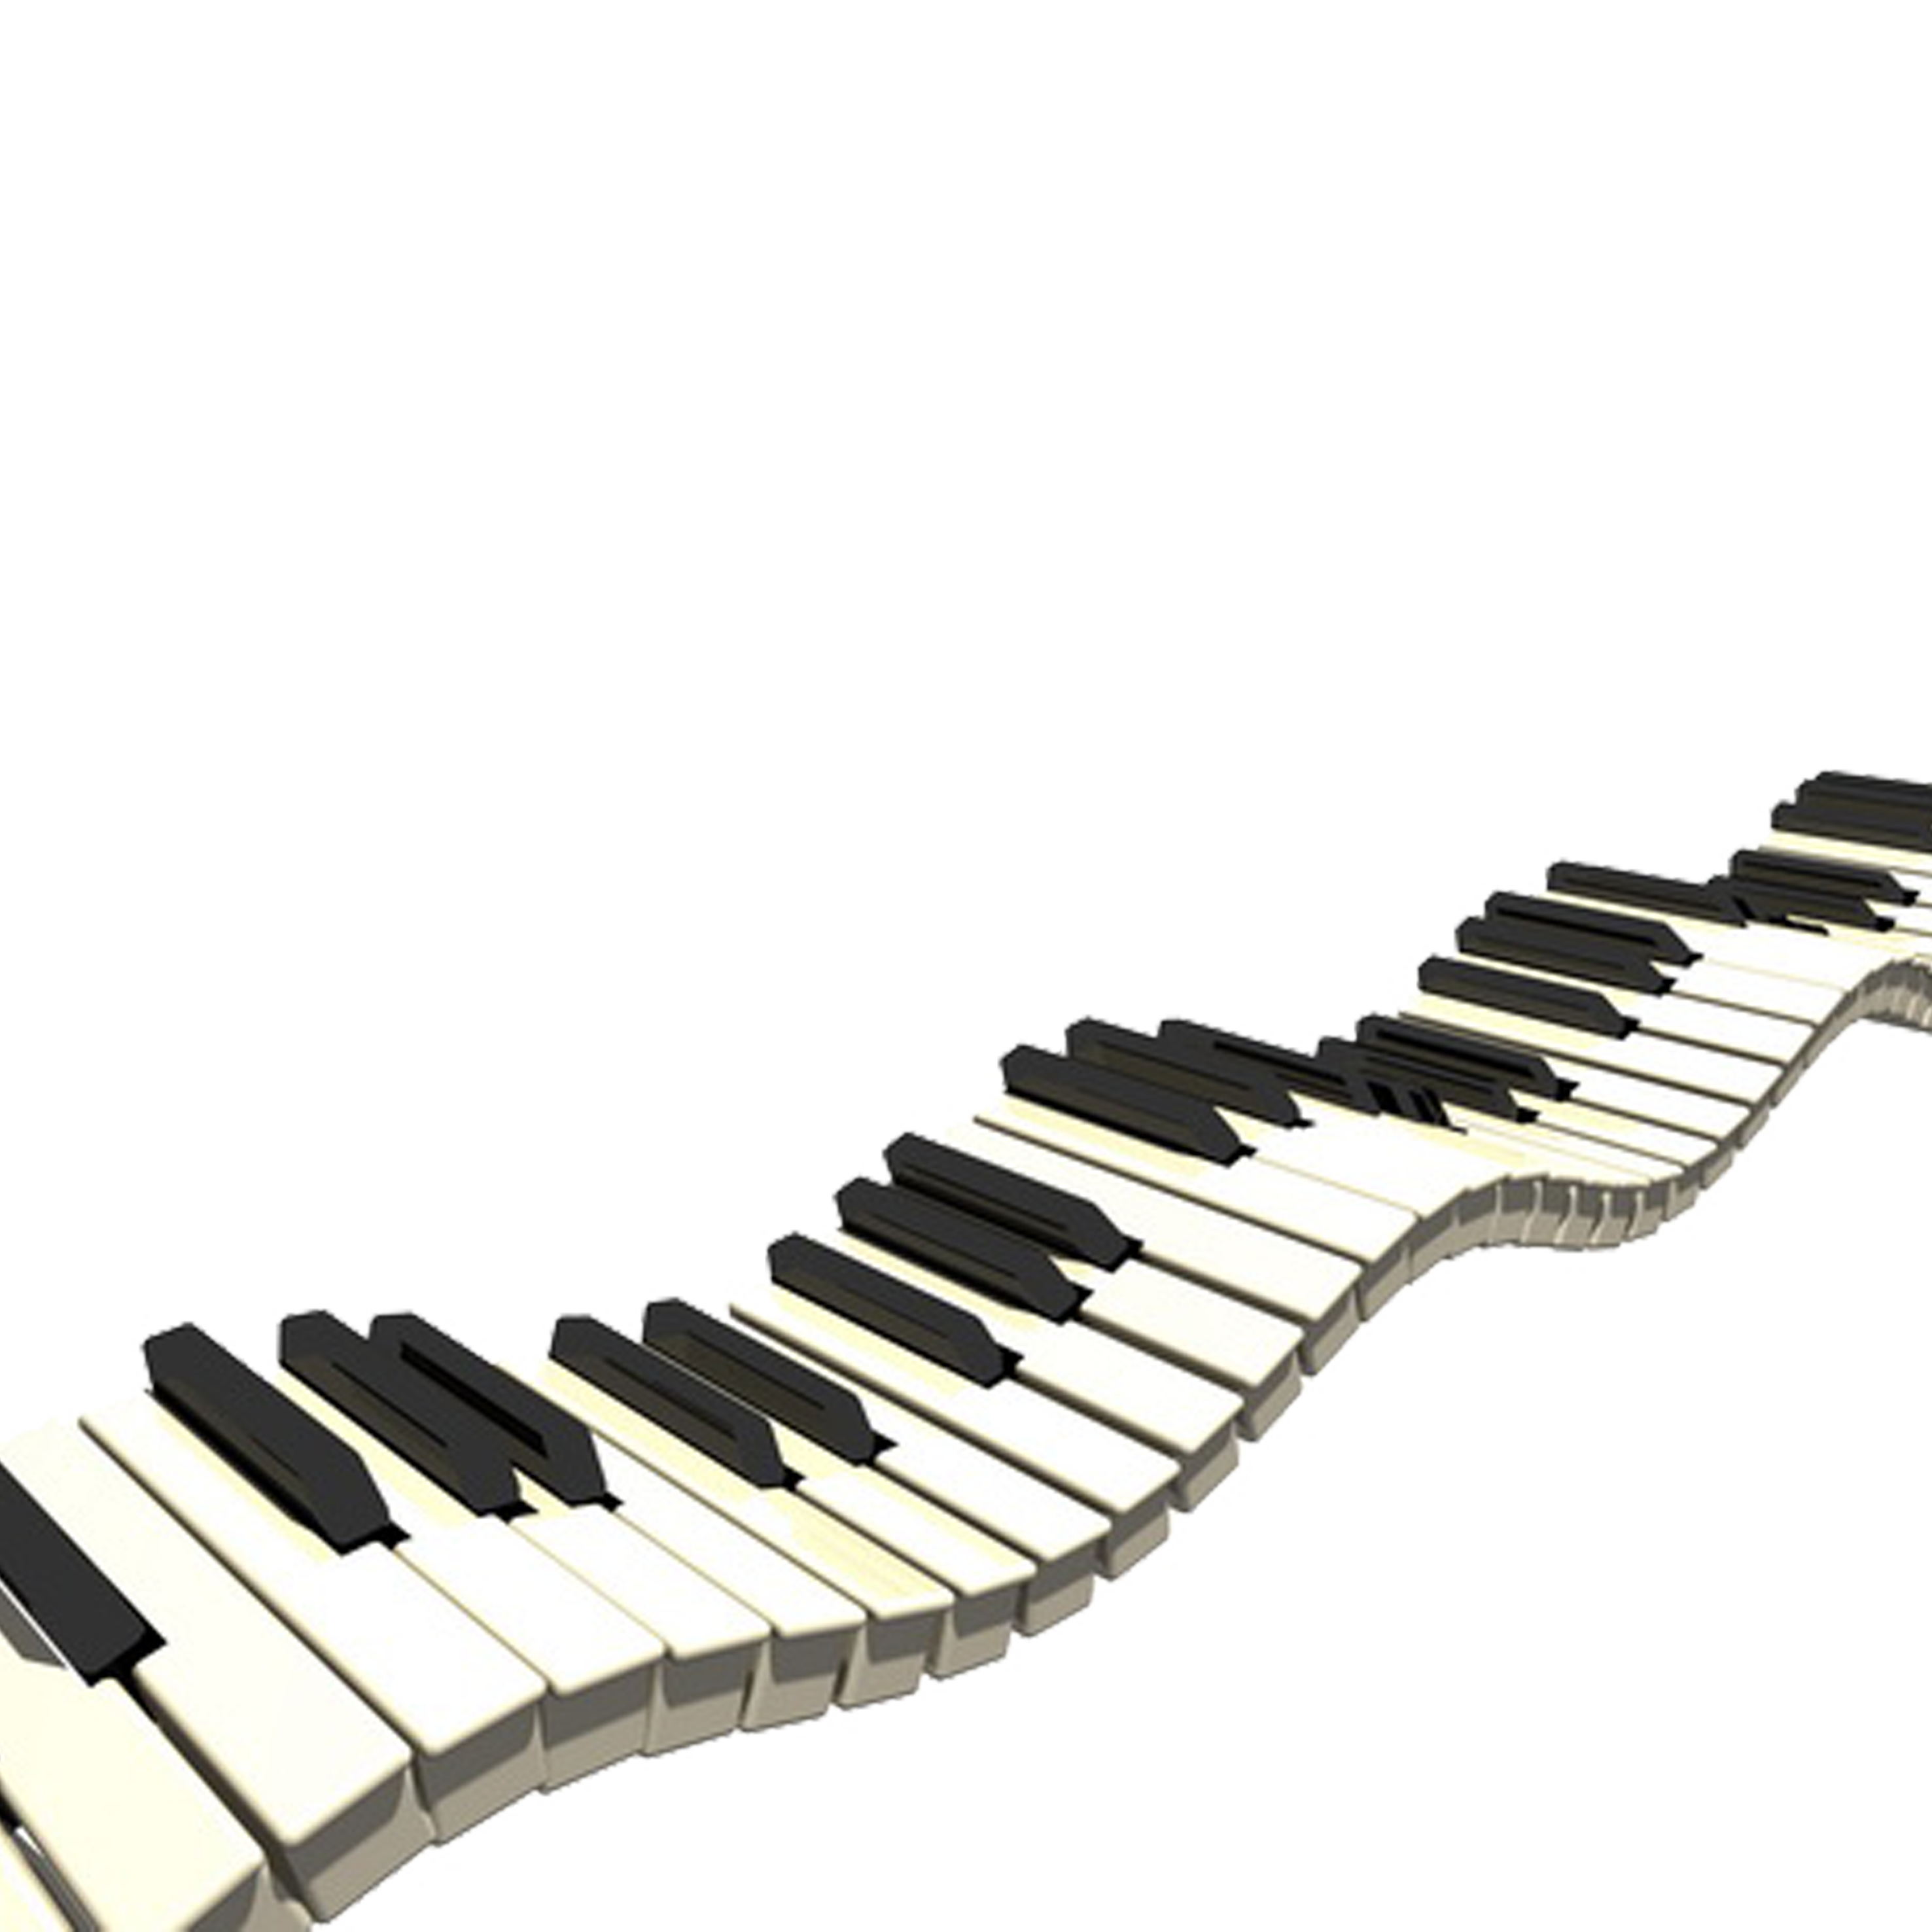 Clipart music keyboard, Clipart music keyboard Transparent